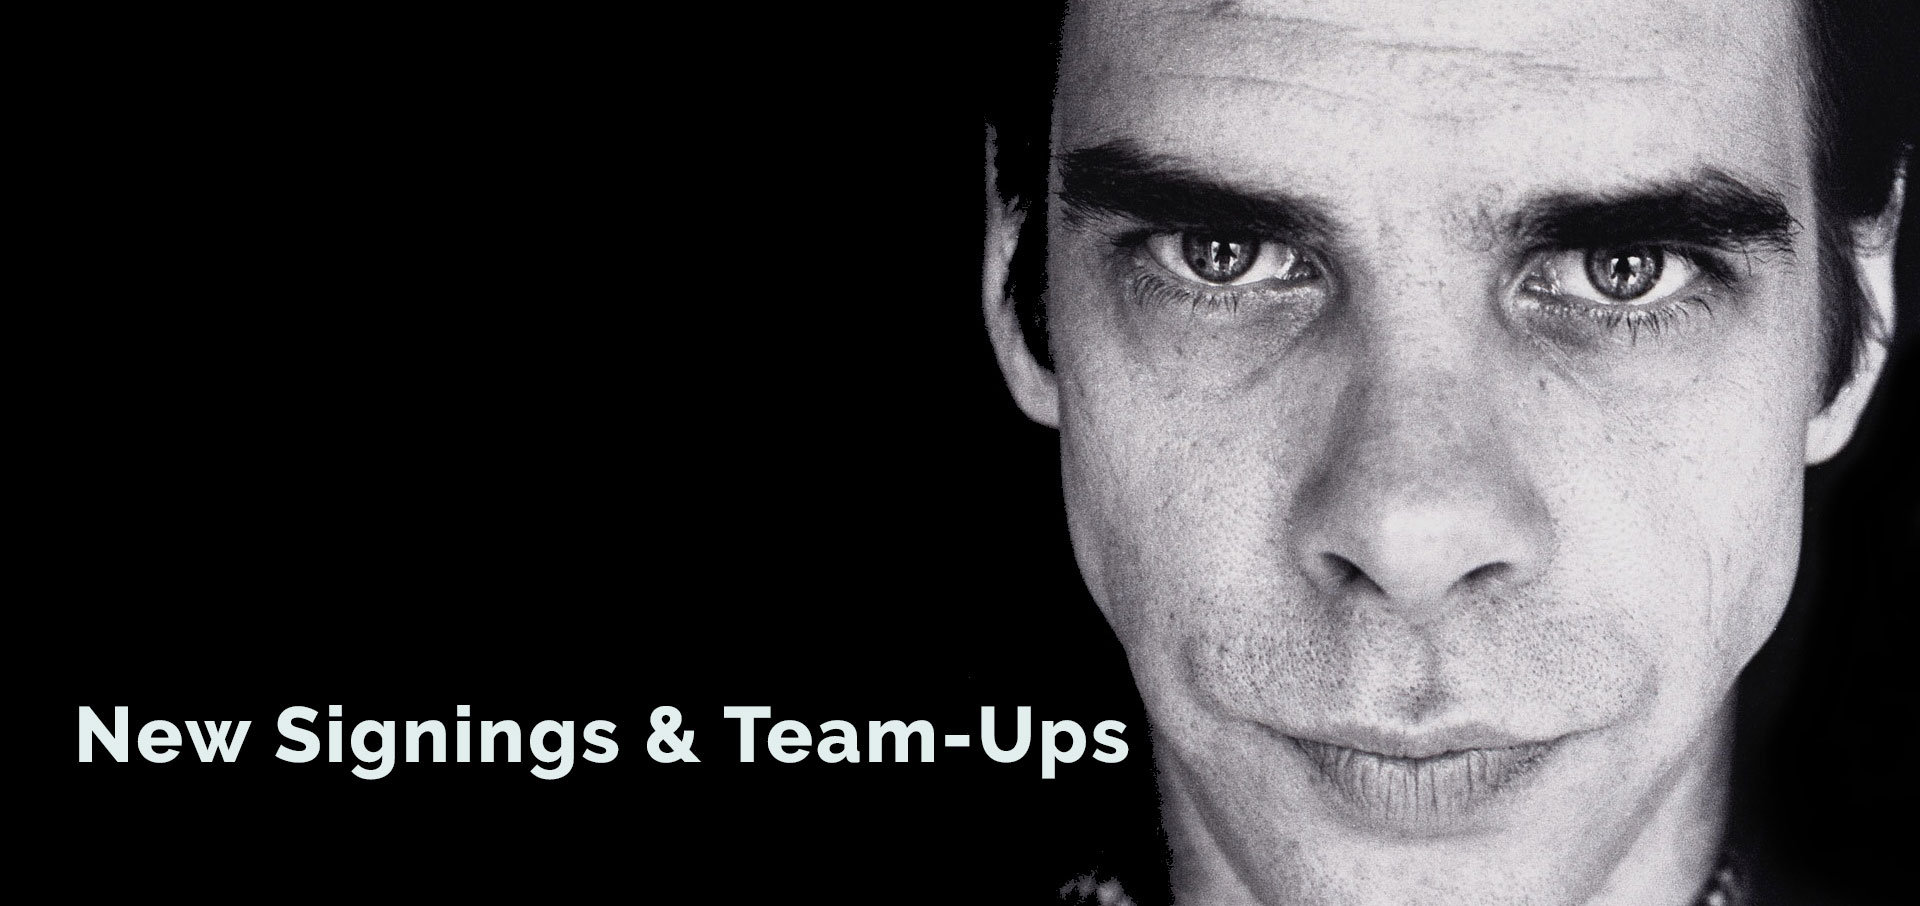 New Signings & Team-Ups: Nick Cave has official skateboard; Pandora sponsors Twilight at Taronga; MoS expands to headphones